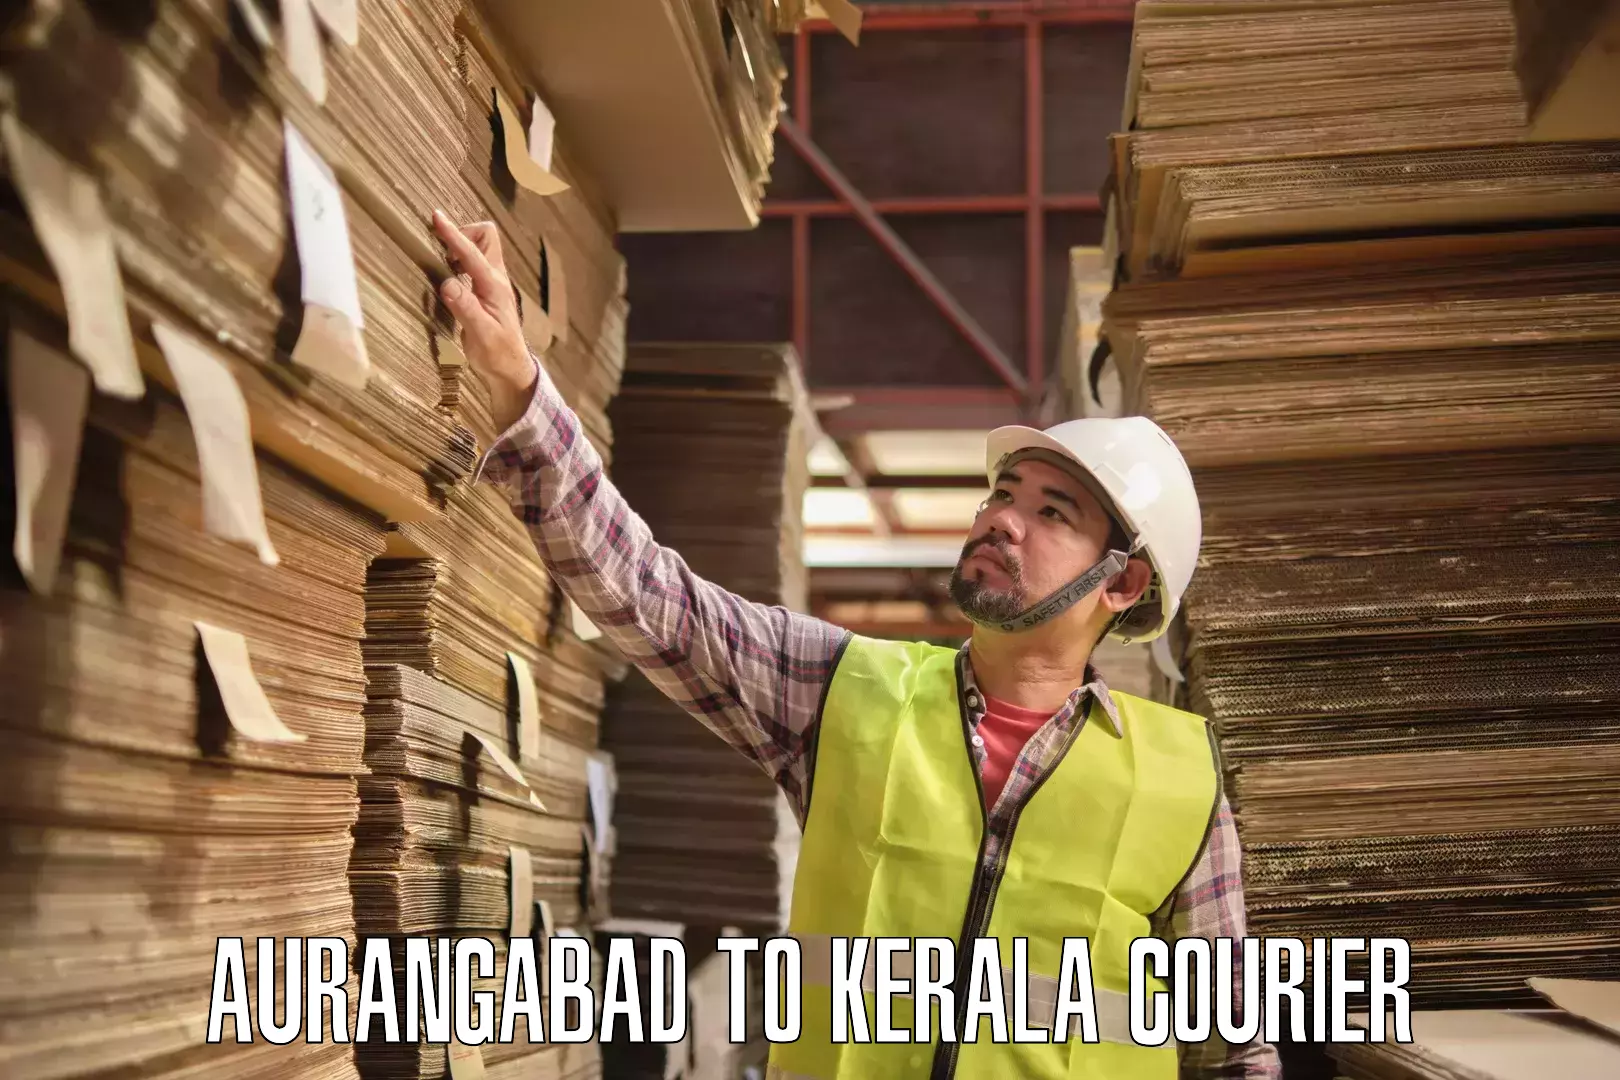 Cost-effective courier options Aurangabad to Kayamkulam